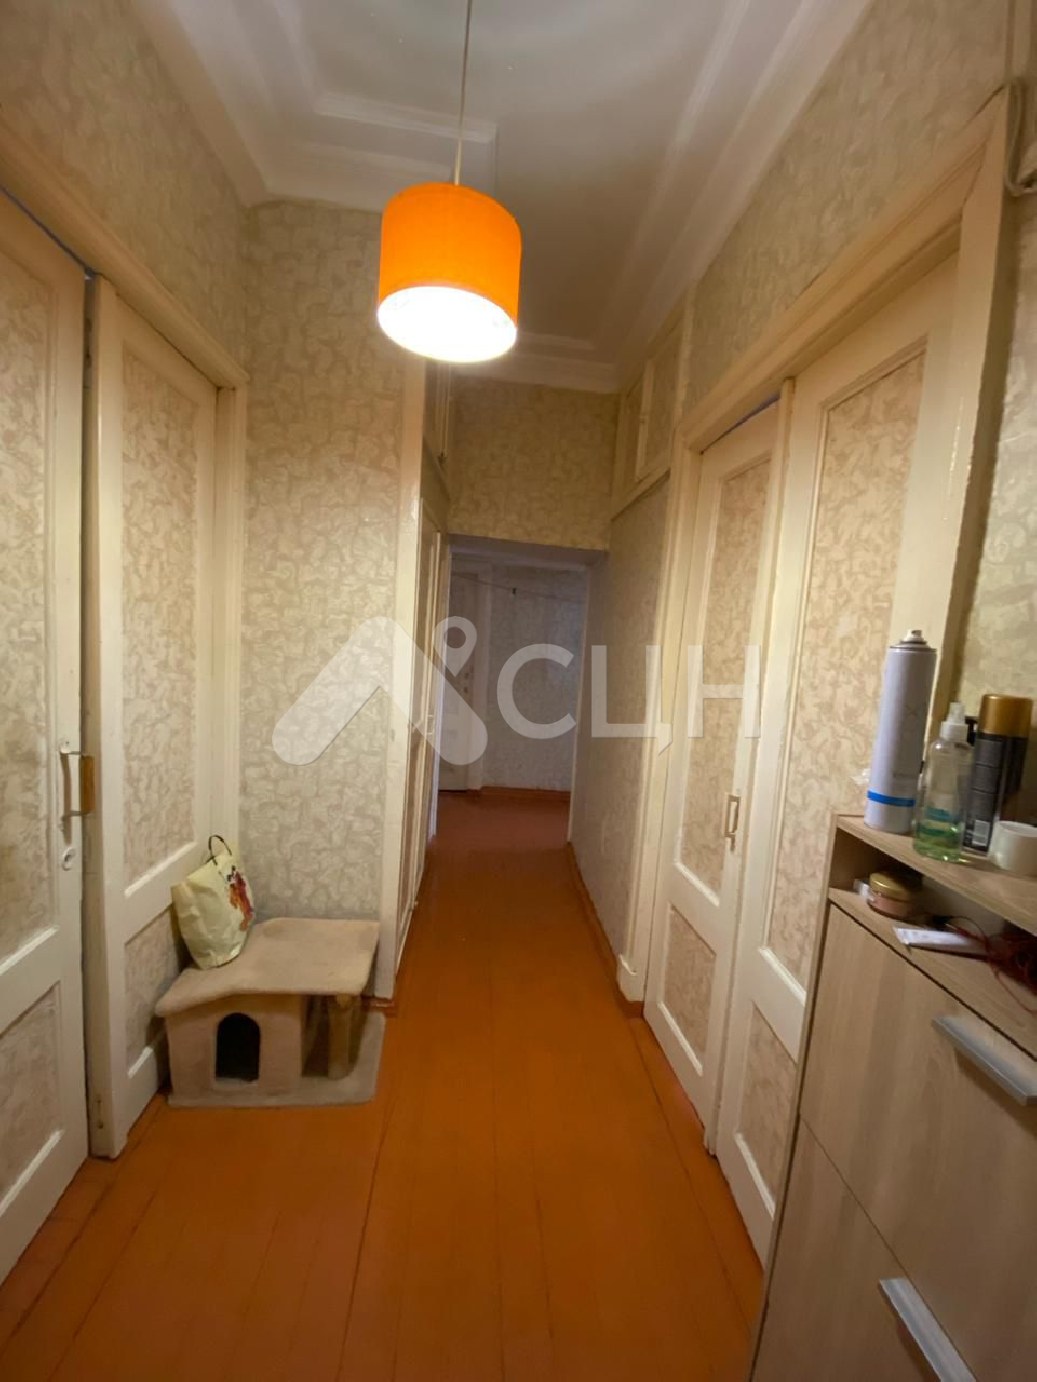 продажа домов саров
: Г. Саров, Шевченко ул. д. 20, 3-комн квартира, этаж 1 из 3, продажа.